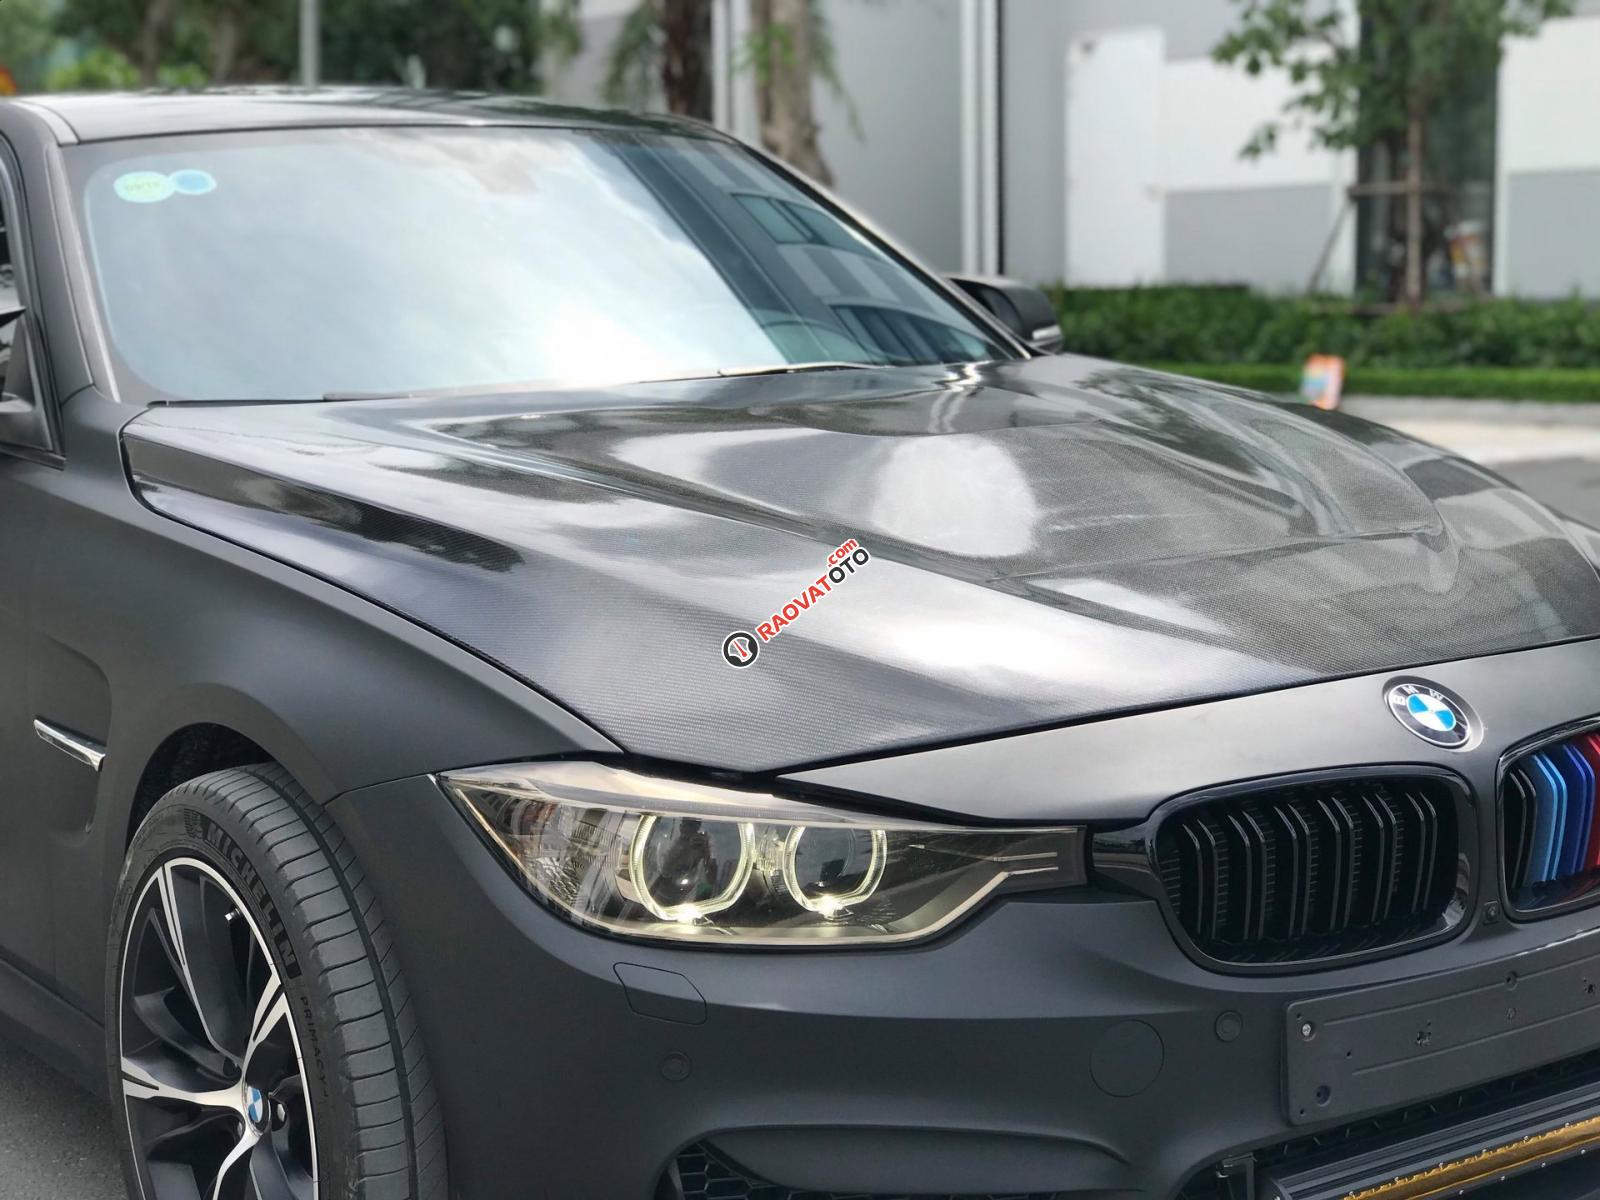 Cần bán BMW 320i, xe đã vào cực nhiều đồ chơi, chi phí độ khoảng 200 triệu-5